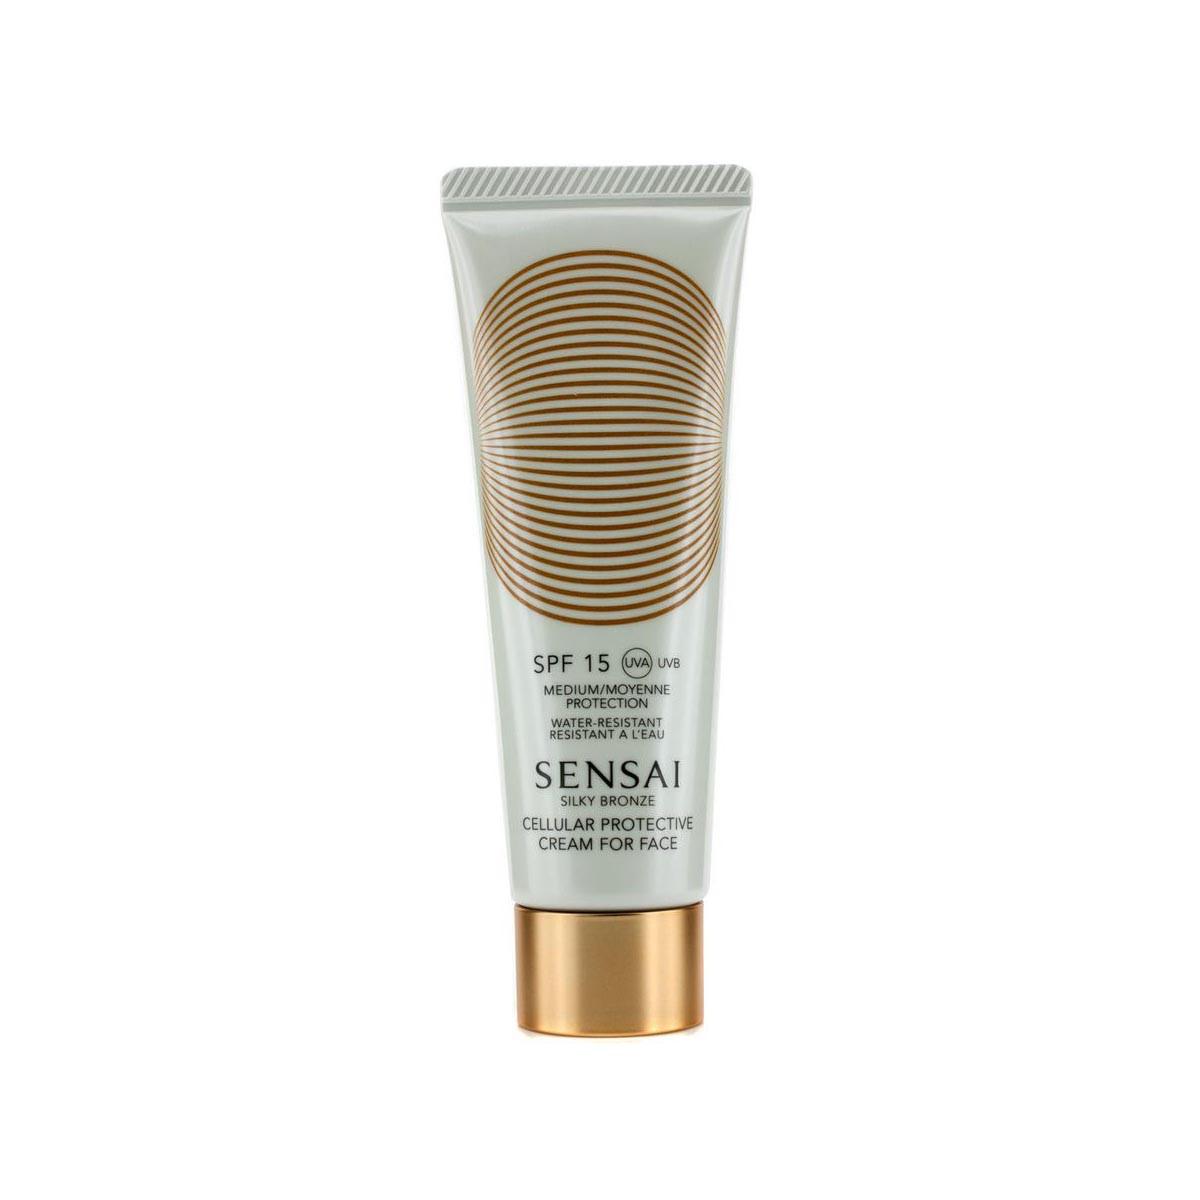 Kanebo-fragrances Sensai Silky Bronze Crema Rostro Spf15 50ml 